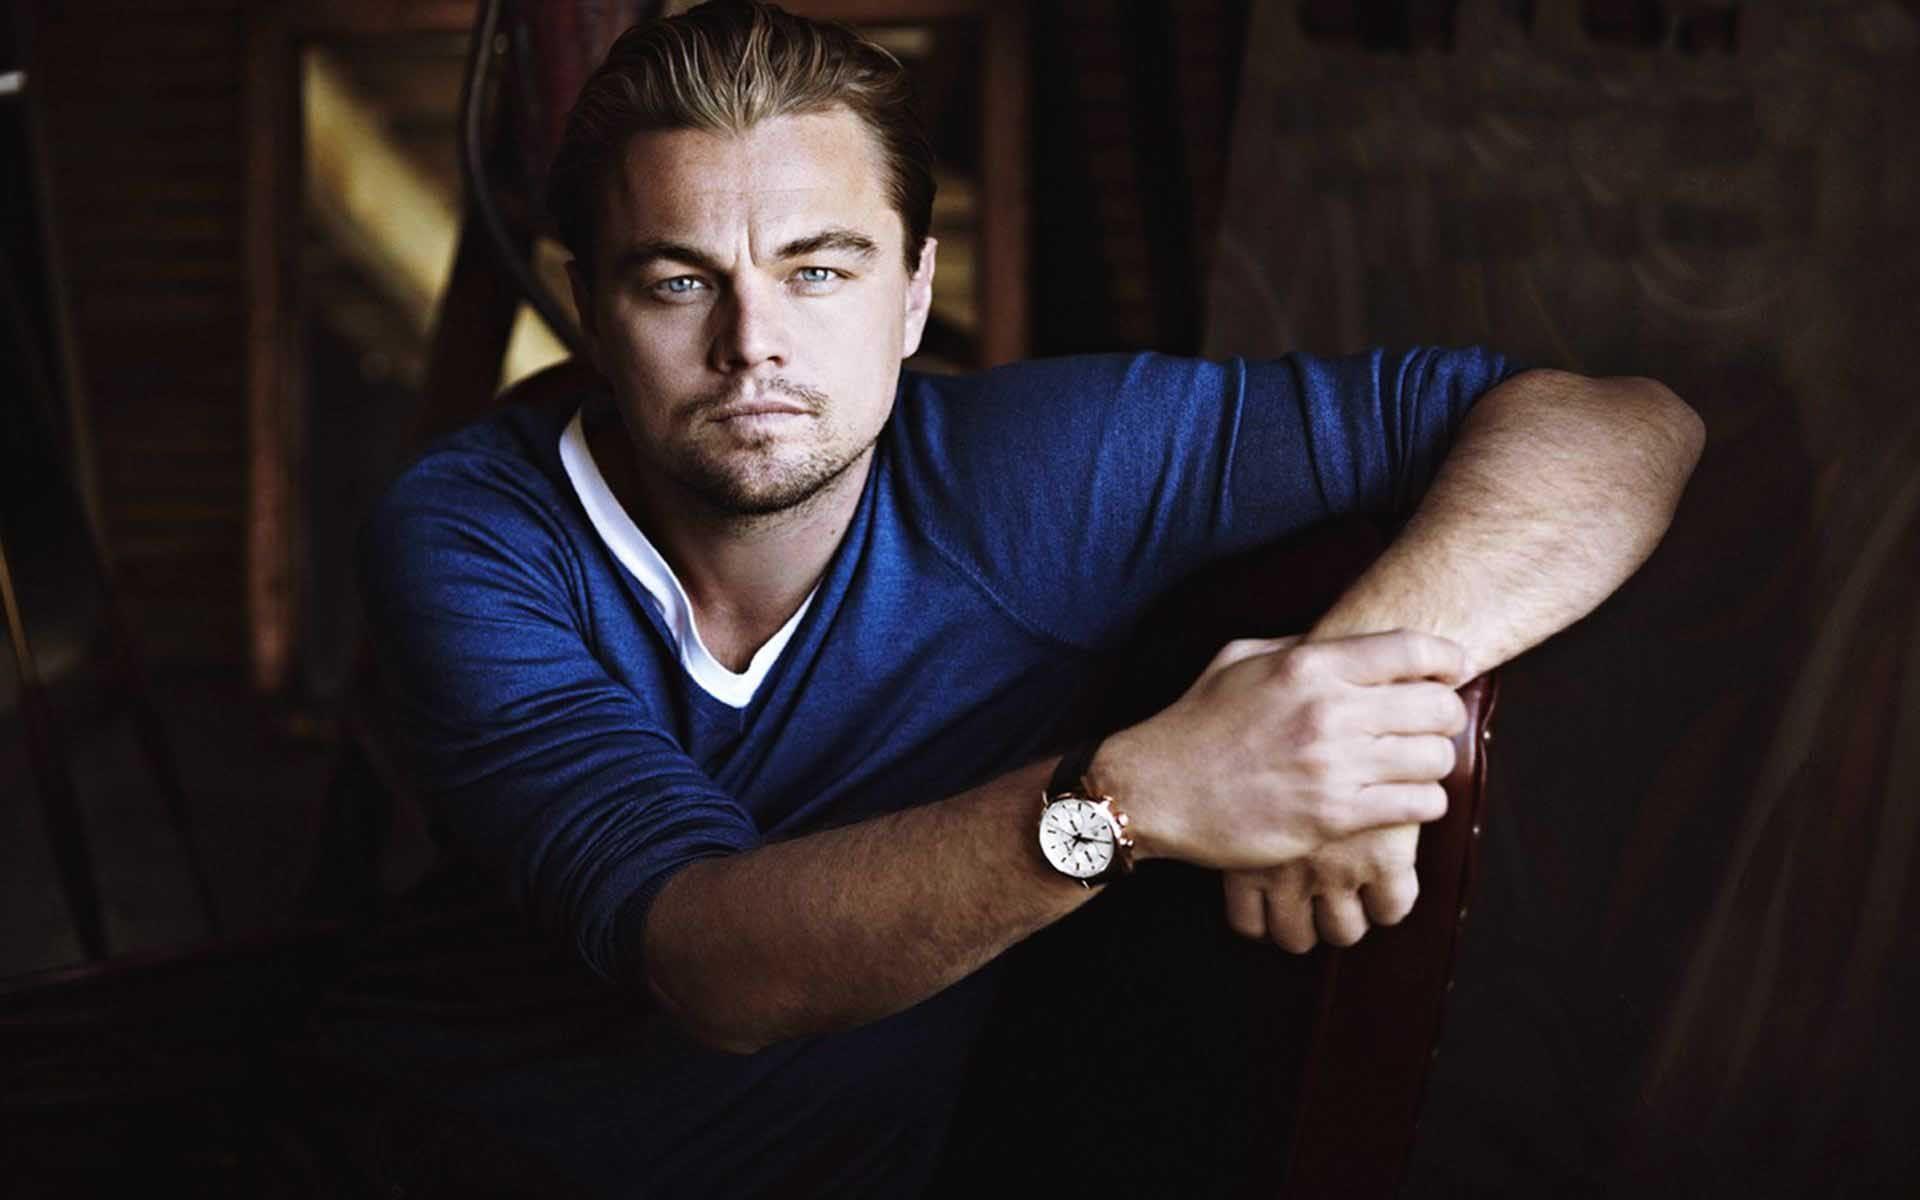 Leonardo DiCaprio az kalsın o rolü kaçıracaktı!